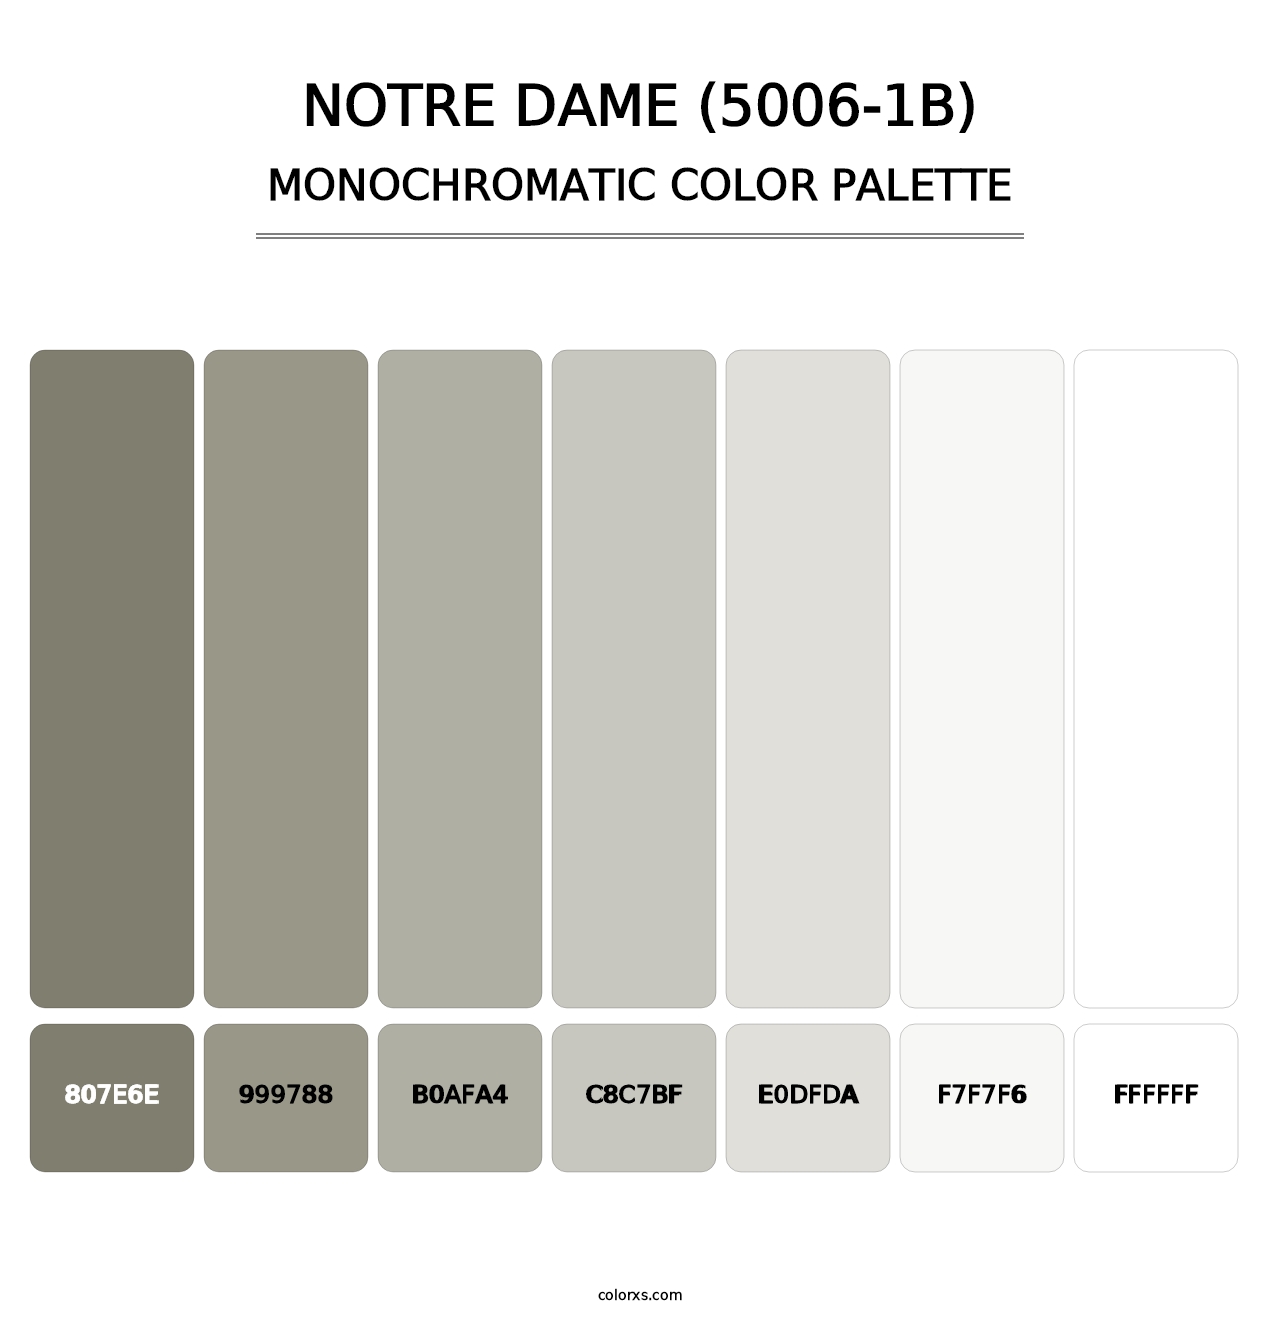 Notre Dame (5006-1B) - Monochromatic Color Palette